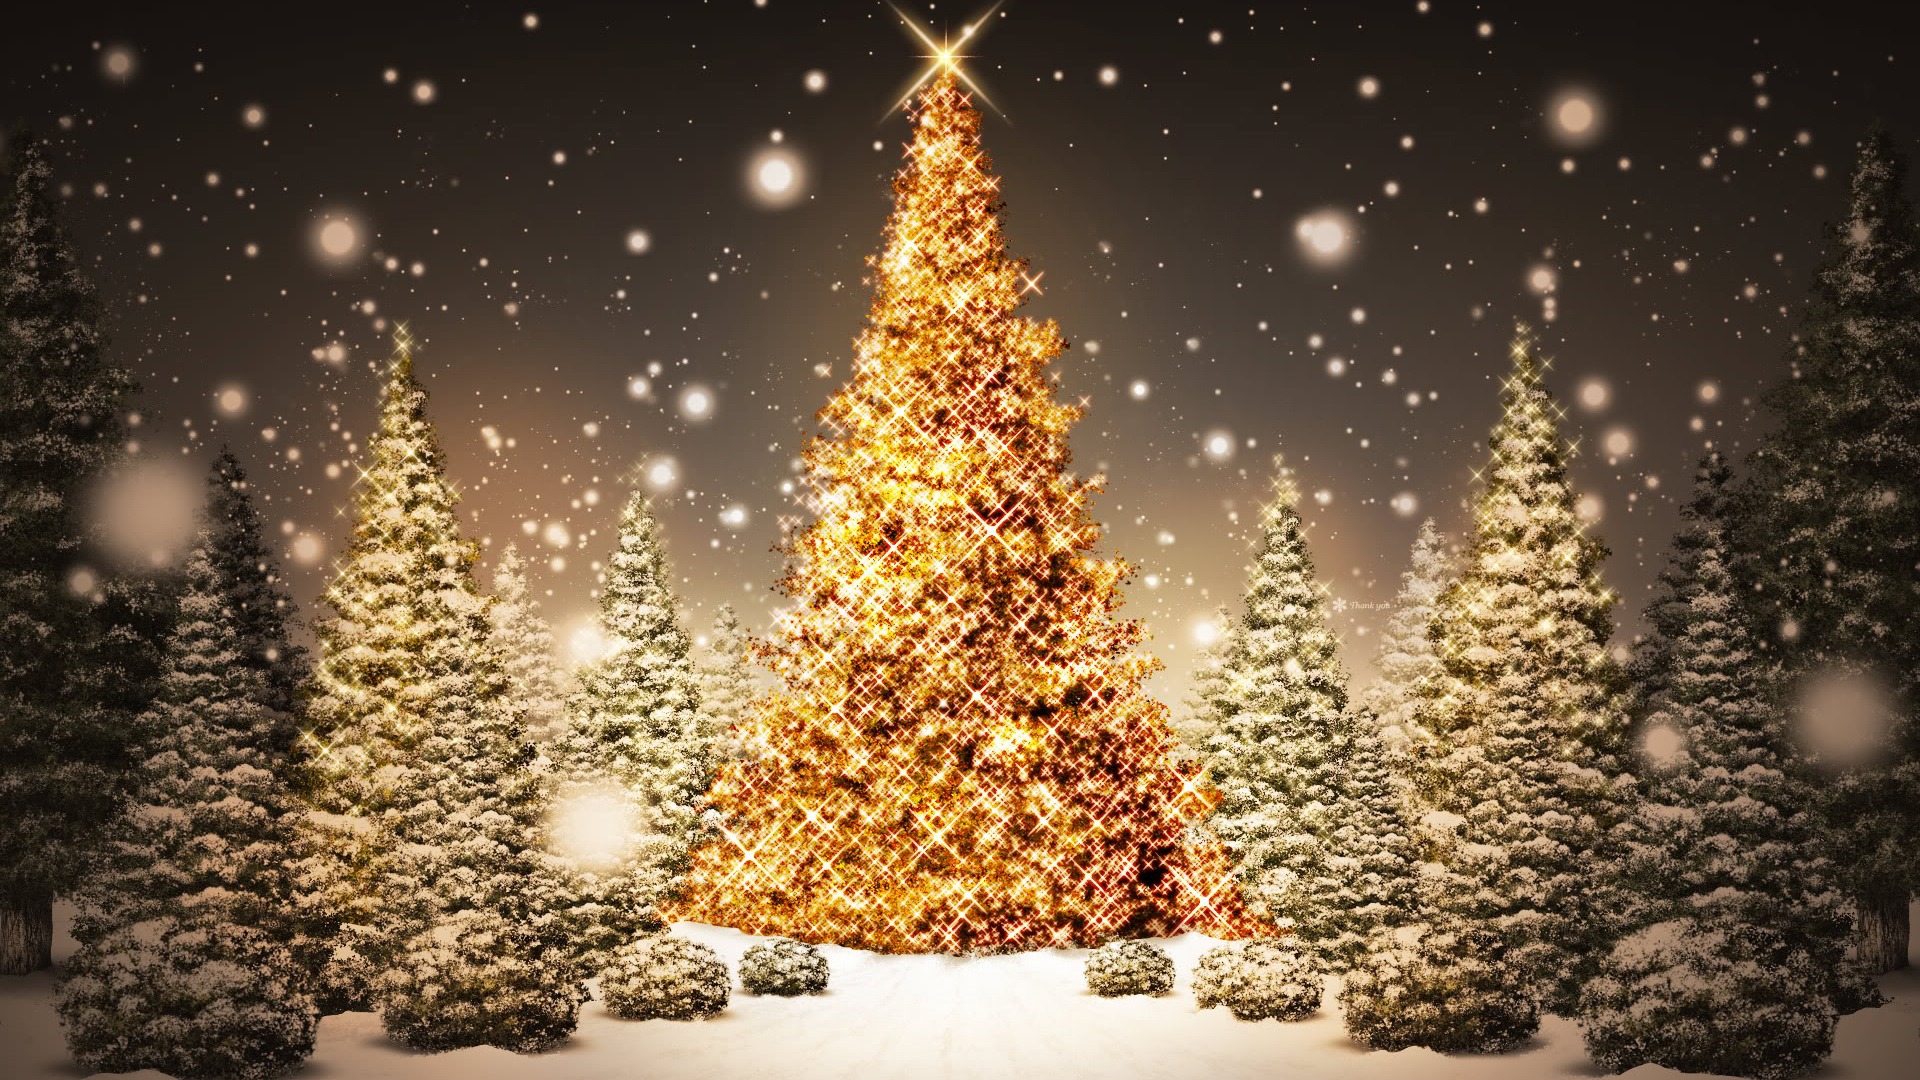 árbol de navidad fondos de escritorio,árbol de navidad,árbol,decoración navideña,luces de navidad,nochebuena